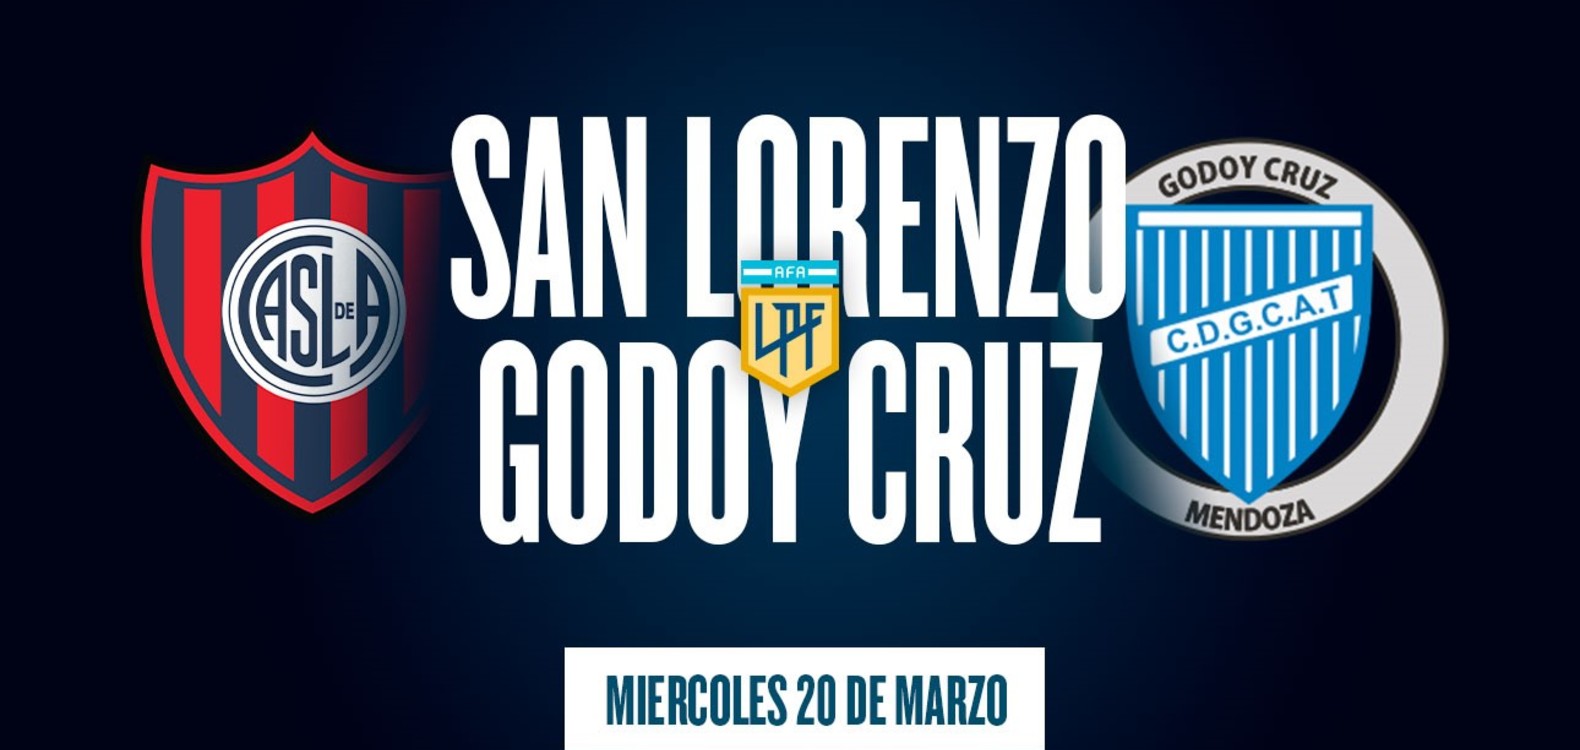 Tras el temporal, San Lorenzo y Godoy Cruz se verán las caras